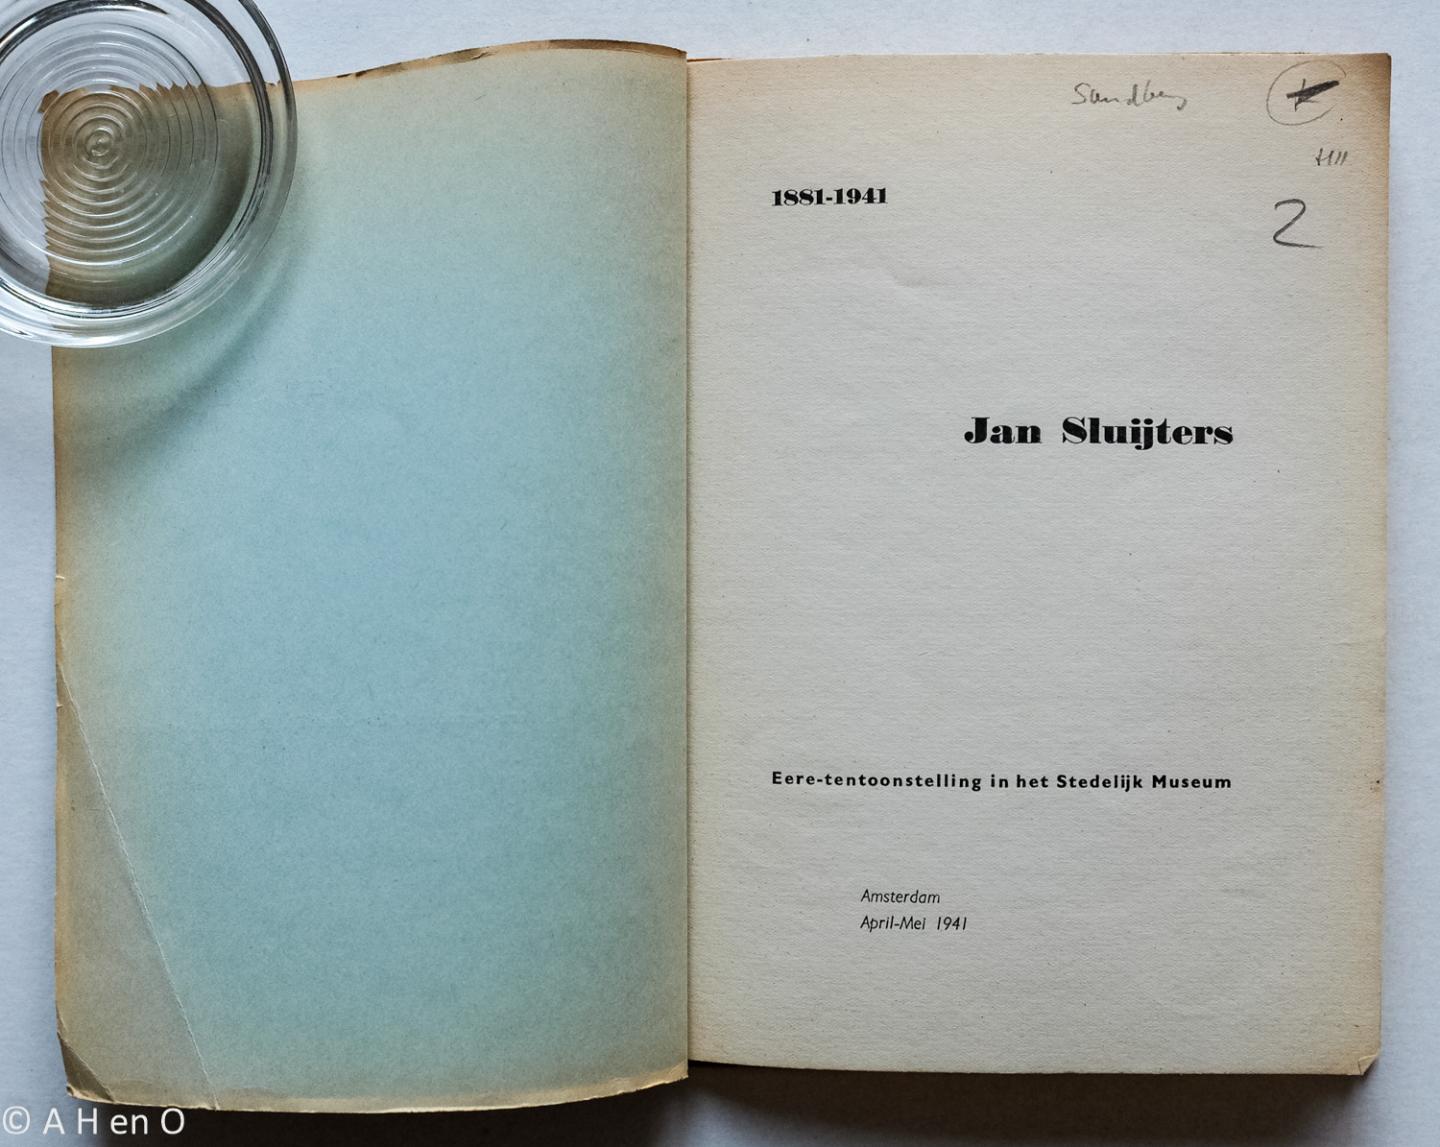  - Jan Sluijters 1881-1941 : eere-tentoonstelling Stedelijk Museum Amsterdam